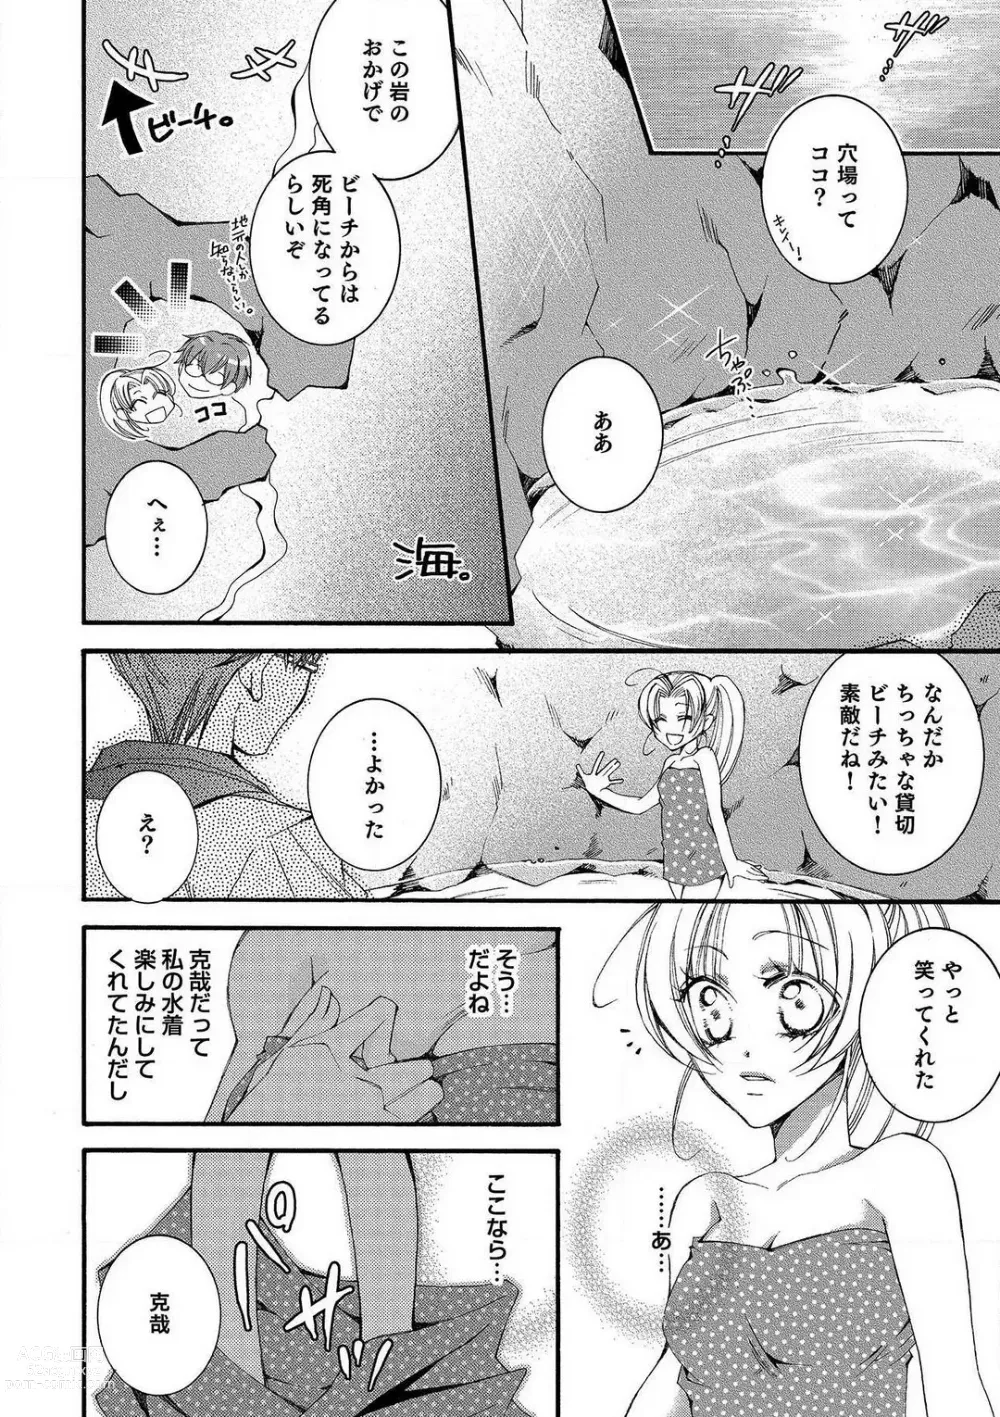 Page 64 of manga LOVE×PLAY 1-4